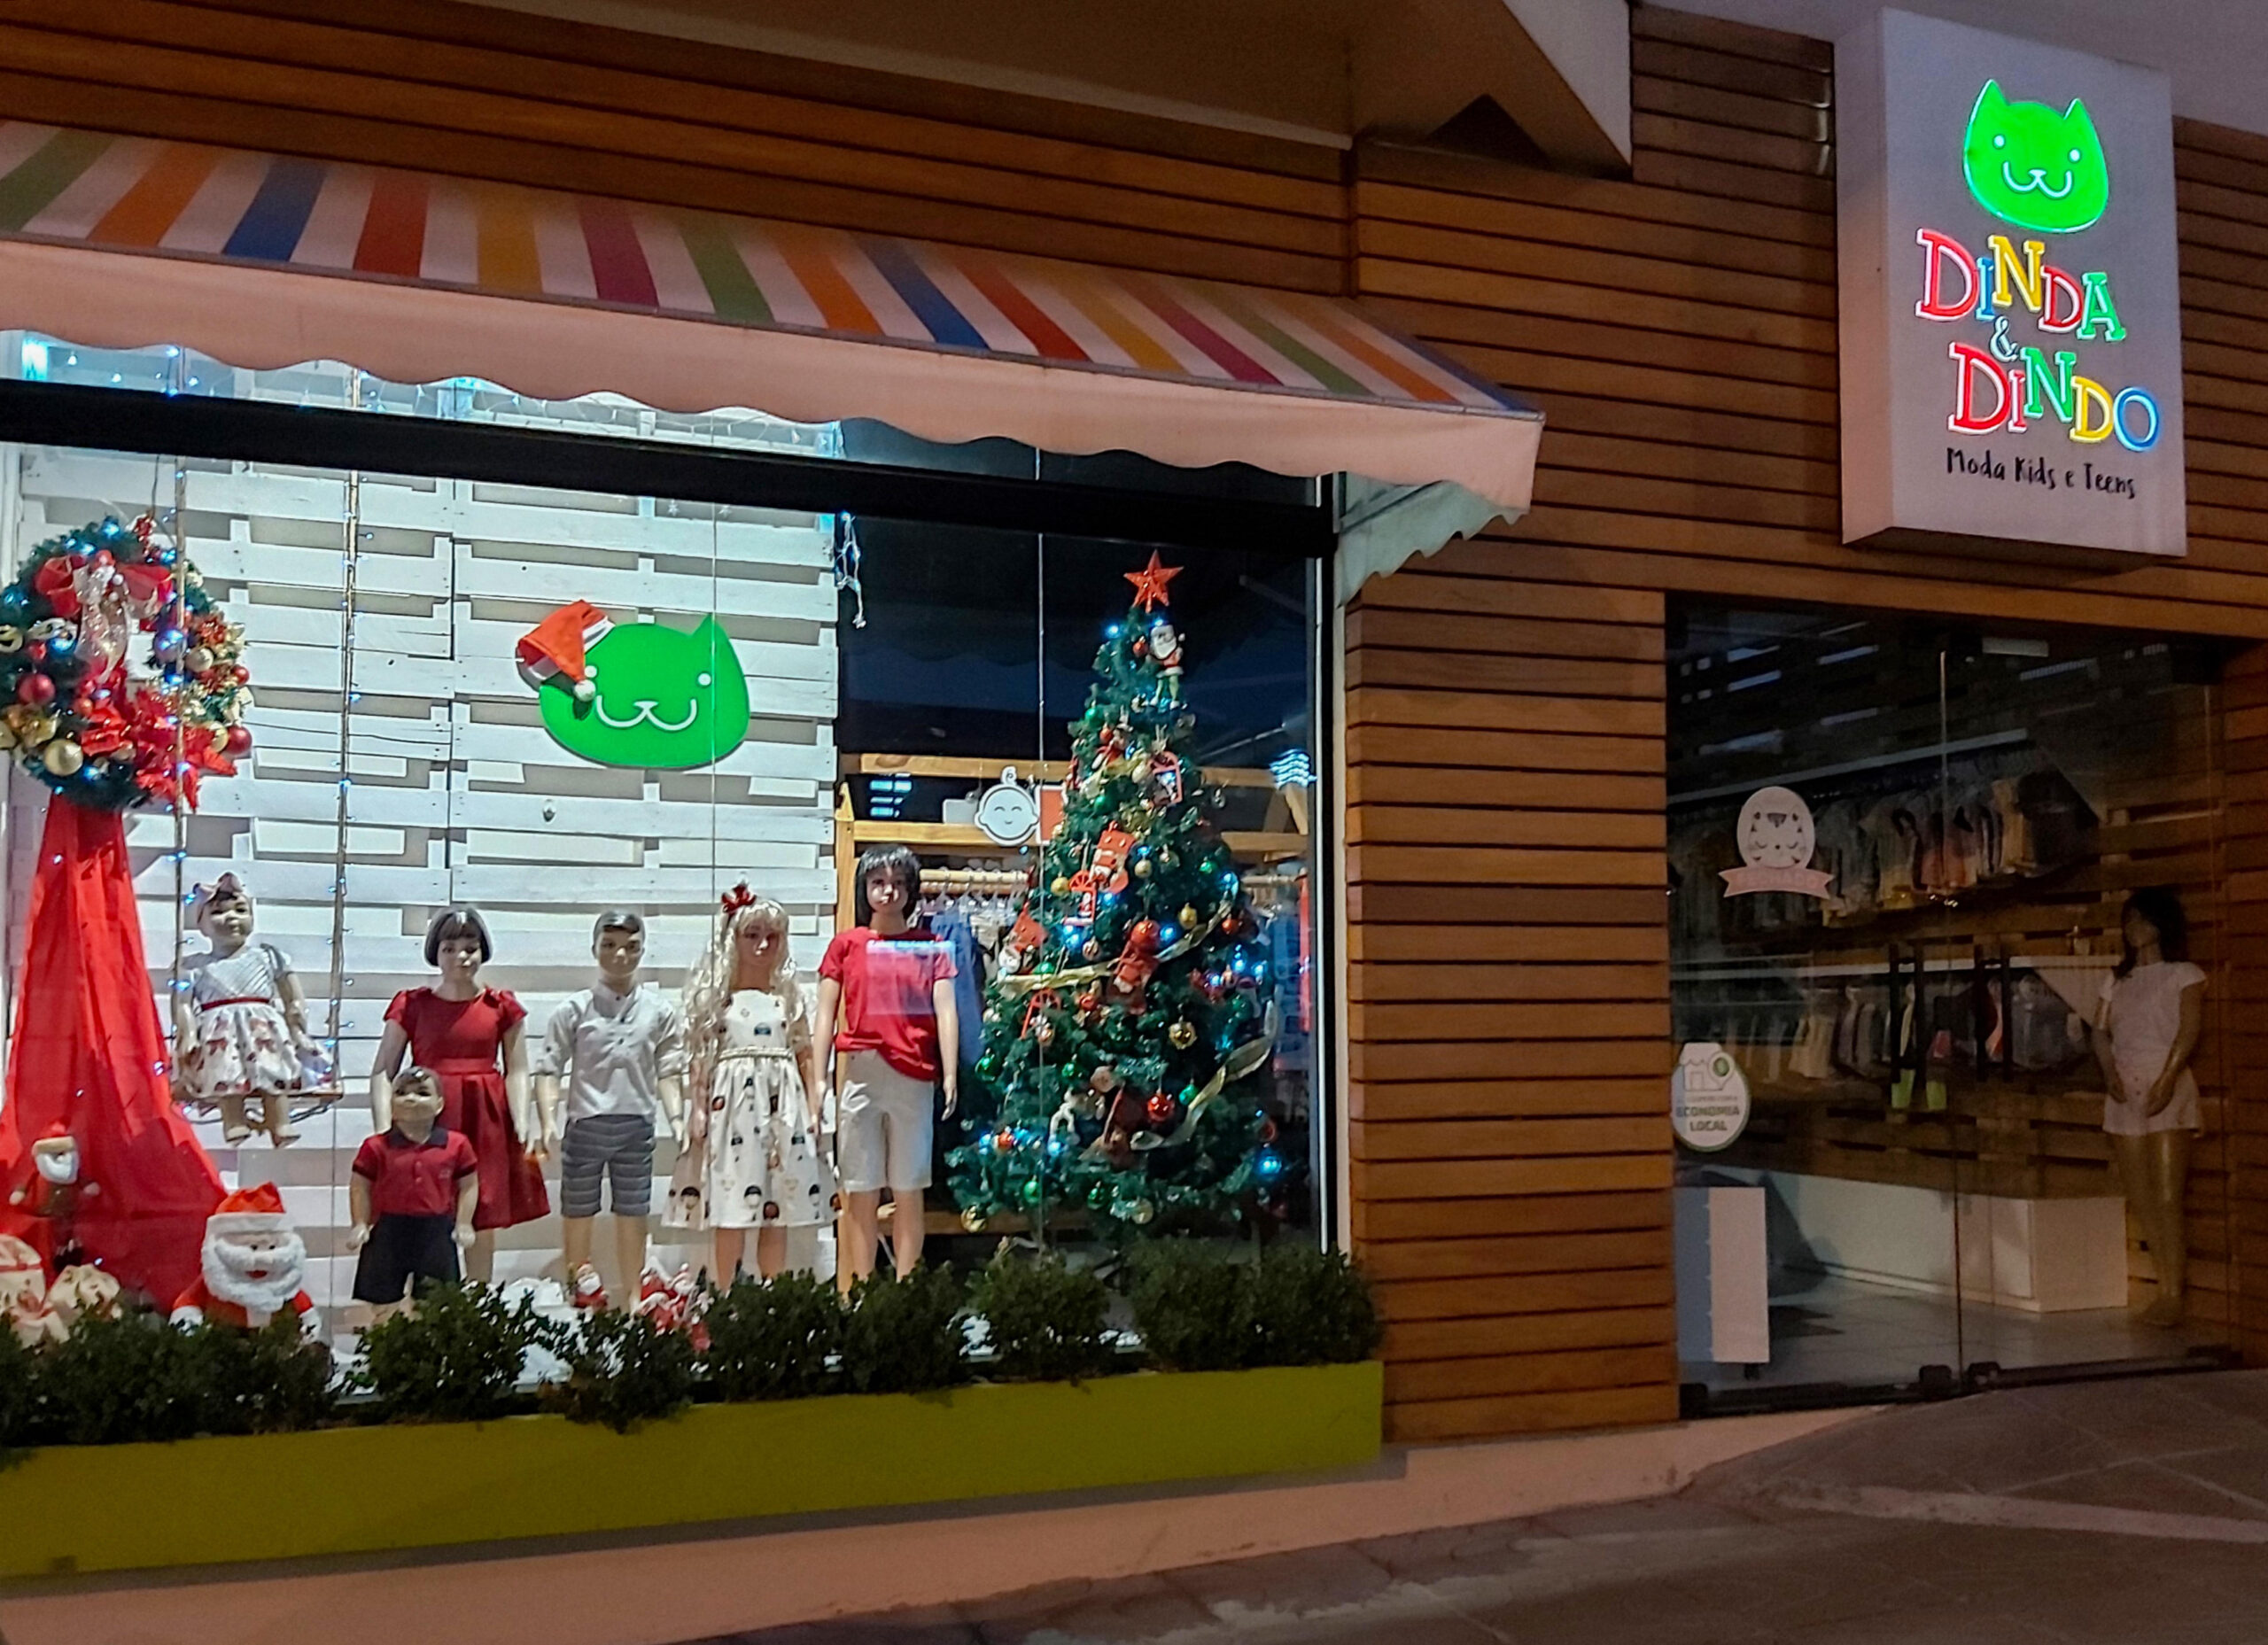 Comunidade elege melhores vitrines de Natal de Teutônia - CIC Teutônia